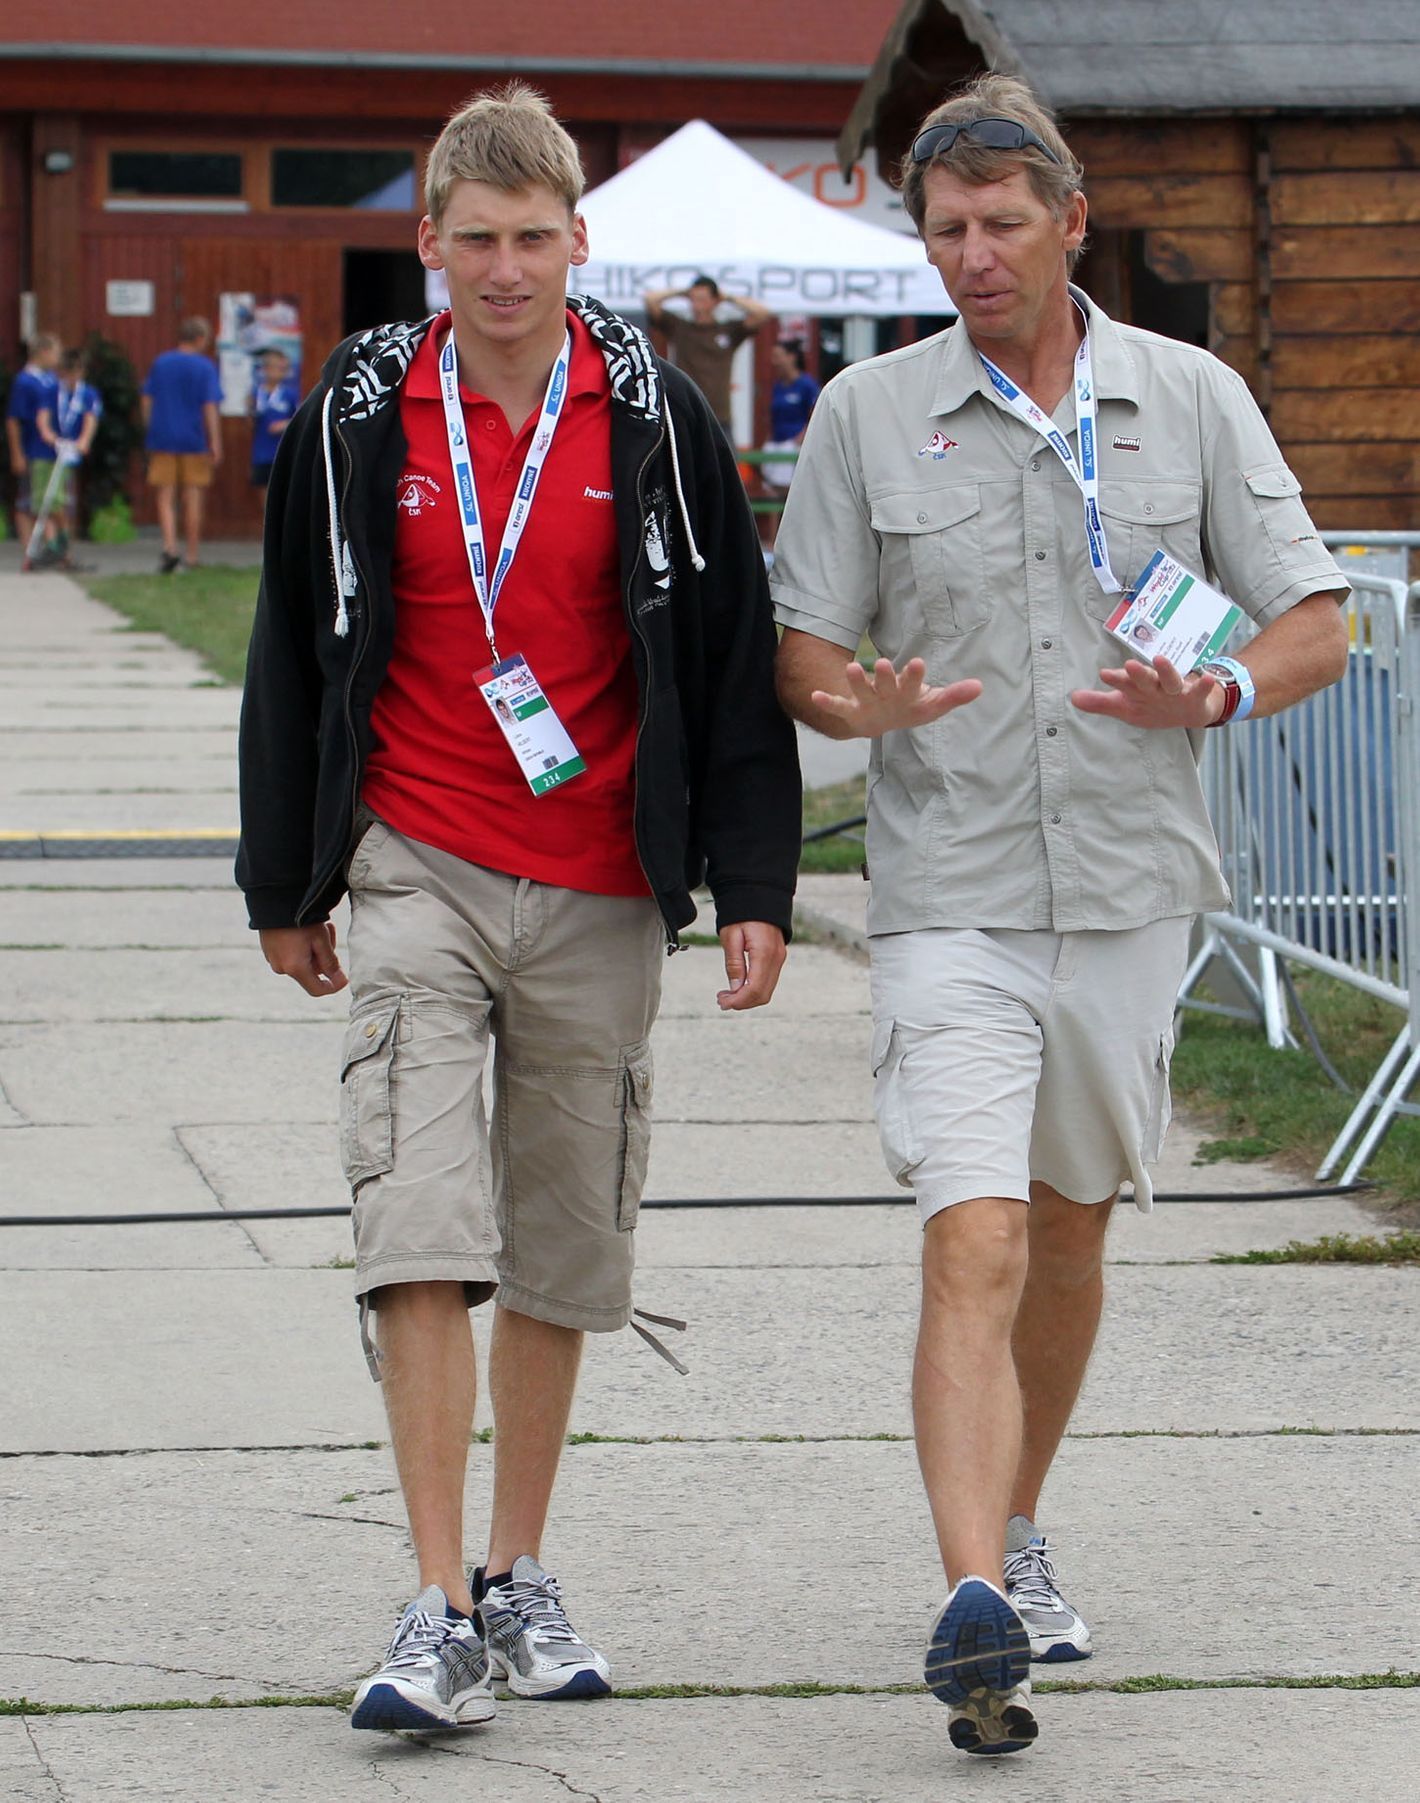 Rodina vodních slalomářů Hilgertových - syn Luboš Hilgert a jeho otec na Světovém poháru 2012 v pražské Tróji.